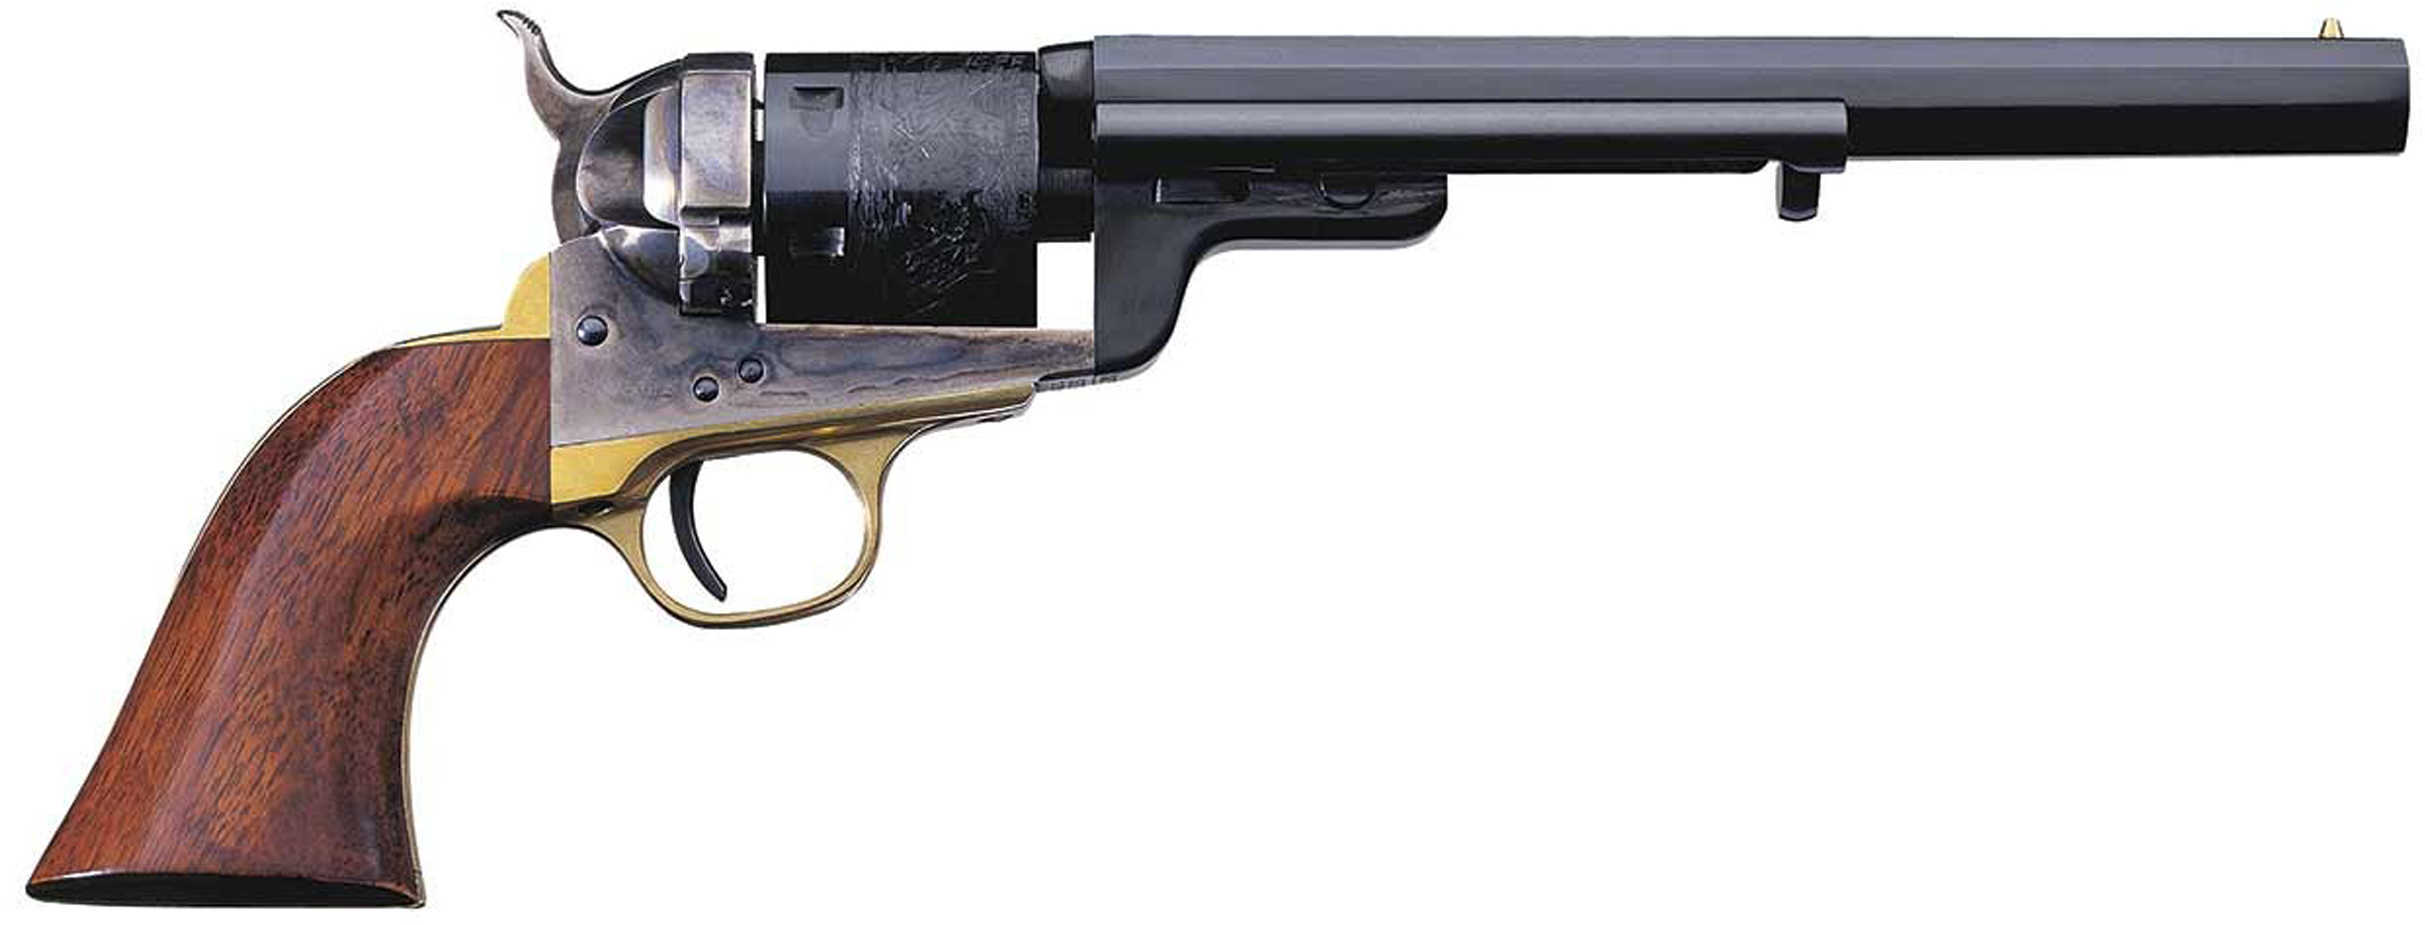 Taylor's & Company C. Mason 1851 Navy 38 Special 7.5" Barrel 6 Round Blued Case Hardened Revolver 0925